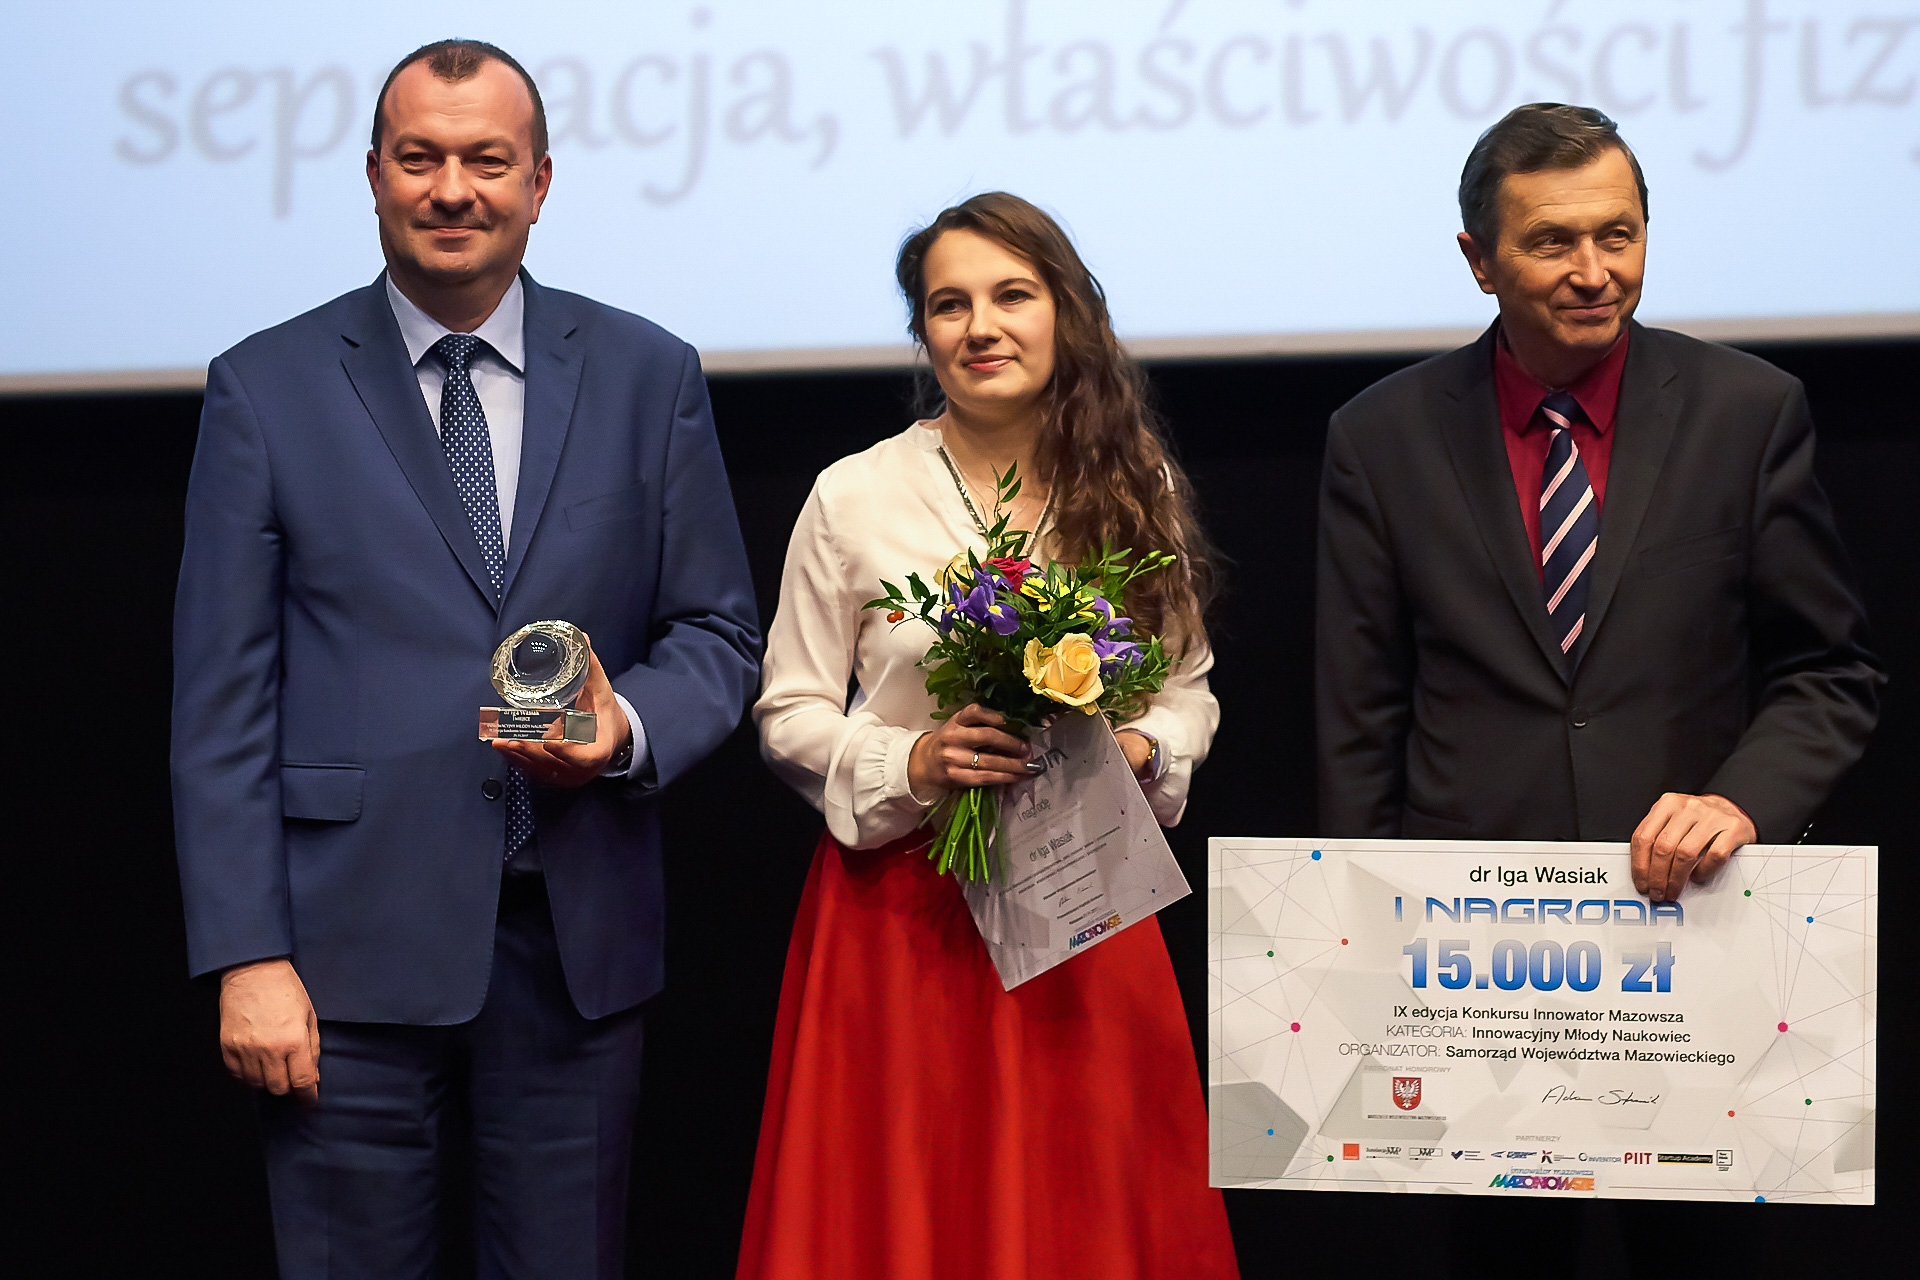 Wręczenie nagrody przez Wicemarszałka Wiesława Raboszuka za I miejsce w kategorii Innowacyjny Młody Naukowiec dr Idze Wasiak.